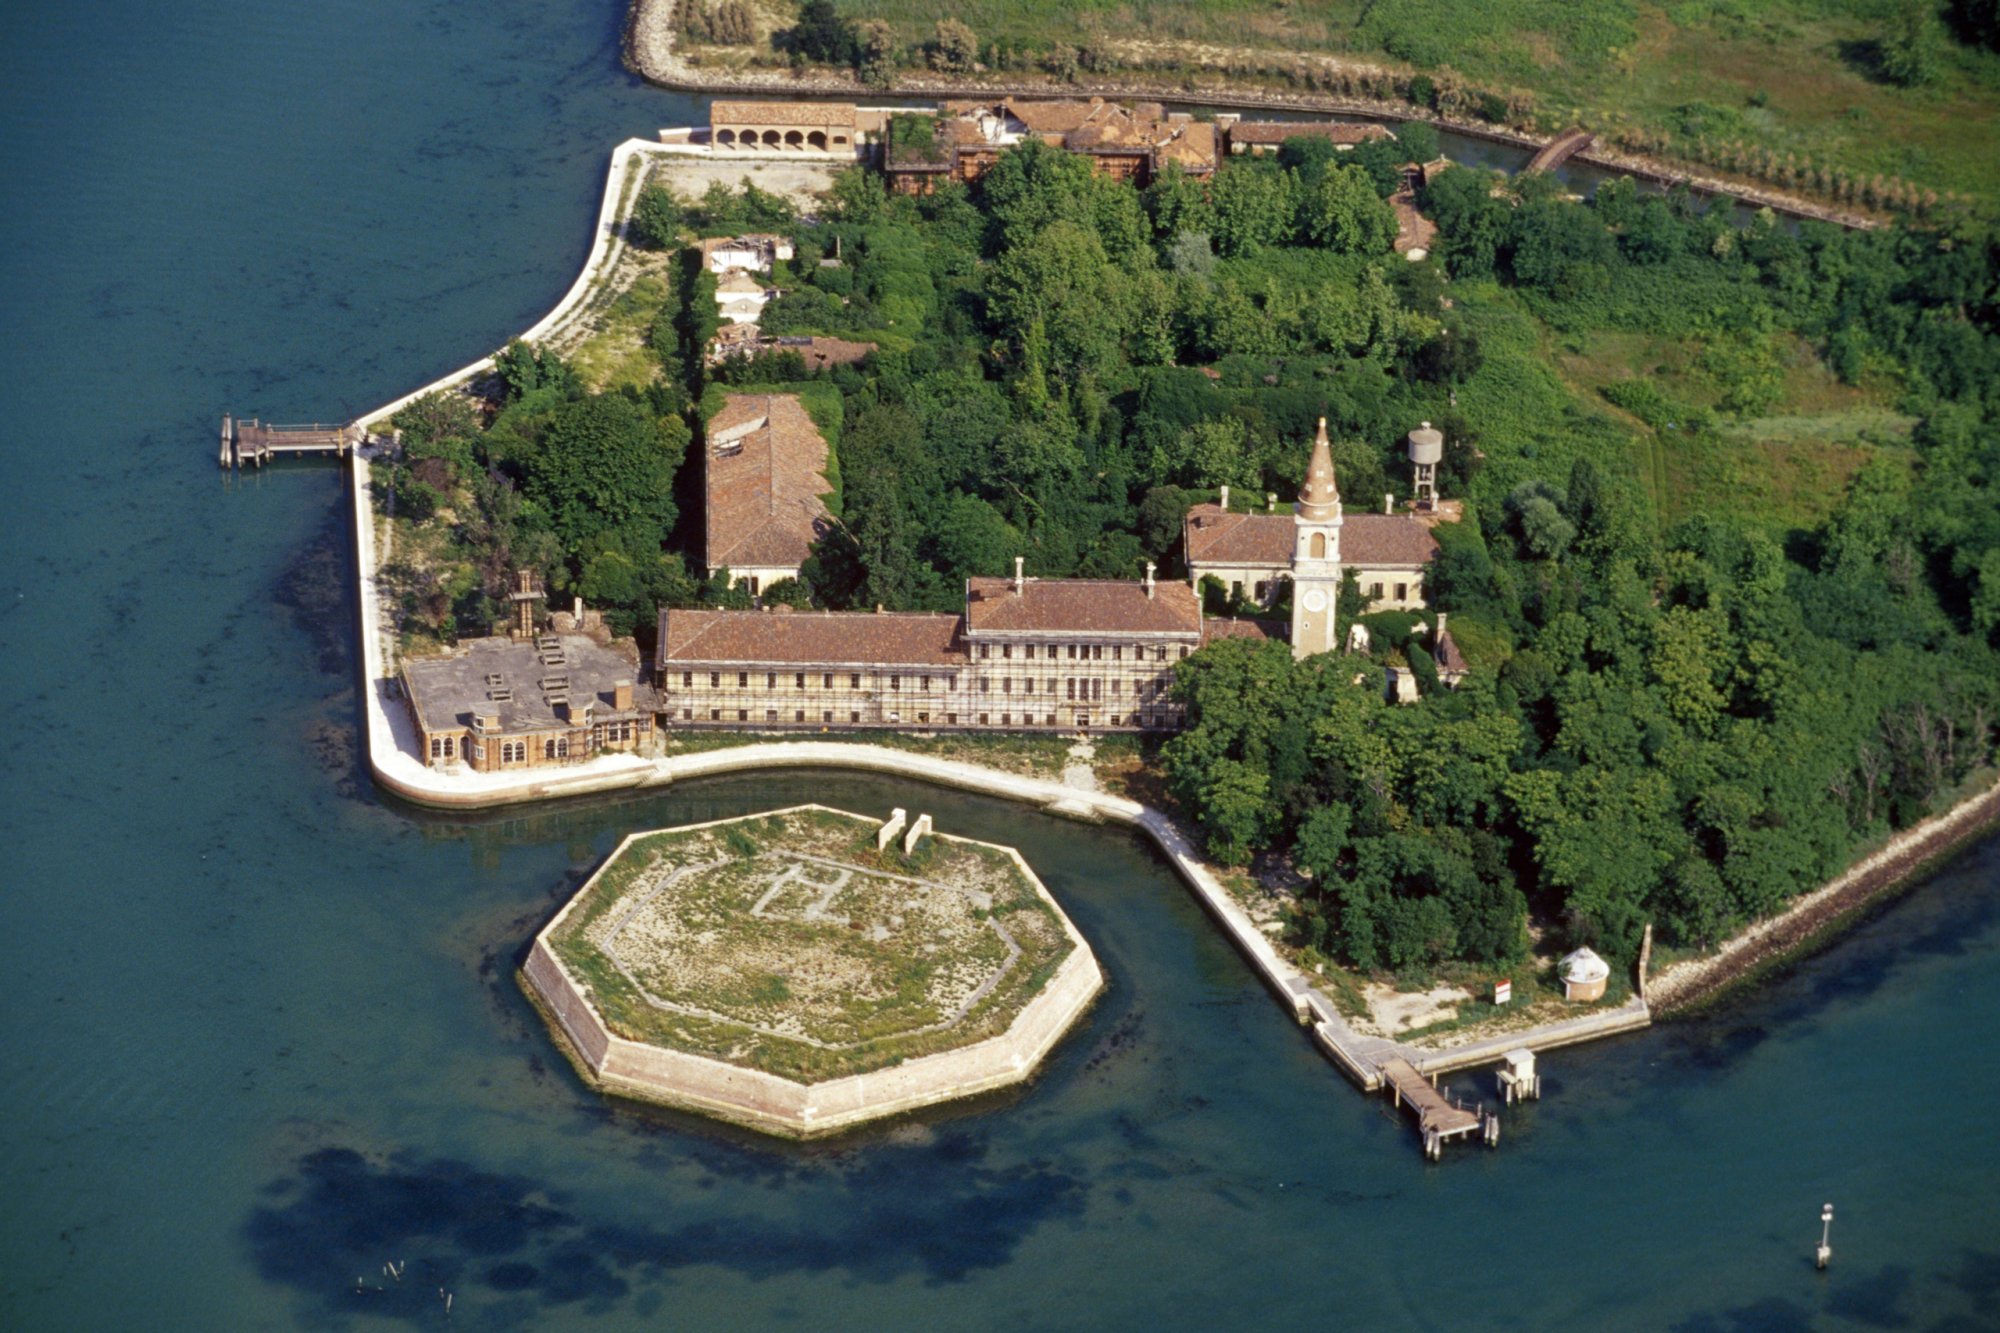 Poveglia, Italy: Trong những năm diễn ra đại dịch “Cái chết đen” (bệnh dịch hạch) vào thế kỷ 14-16, hòn đảo nhỏ Poveglia nằm gần Venice là nơi tập trung người bệnh. 